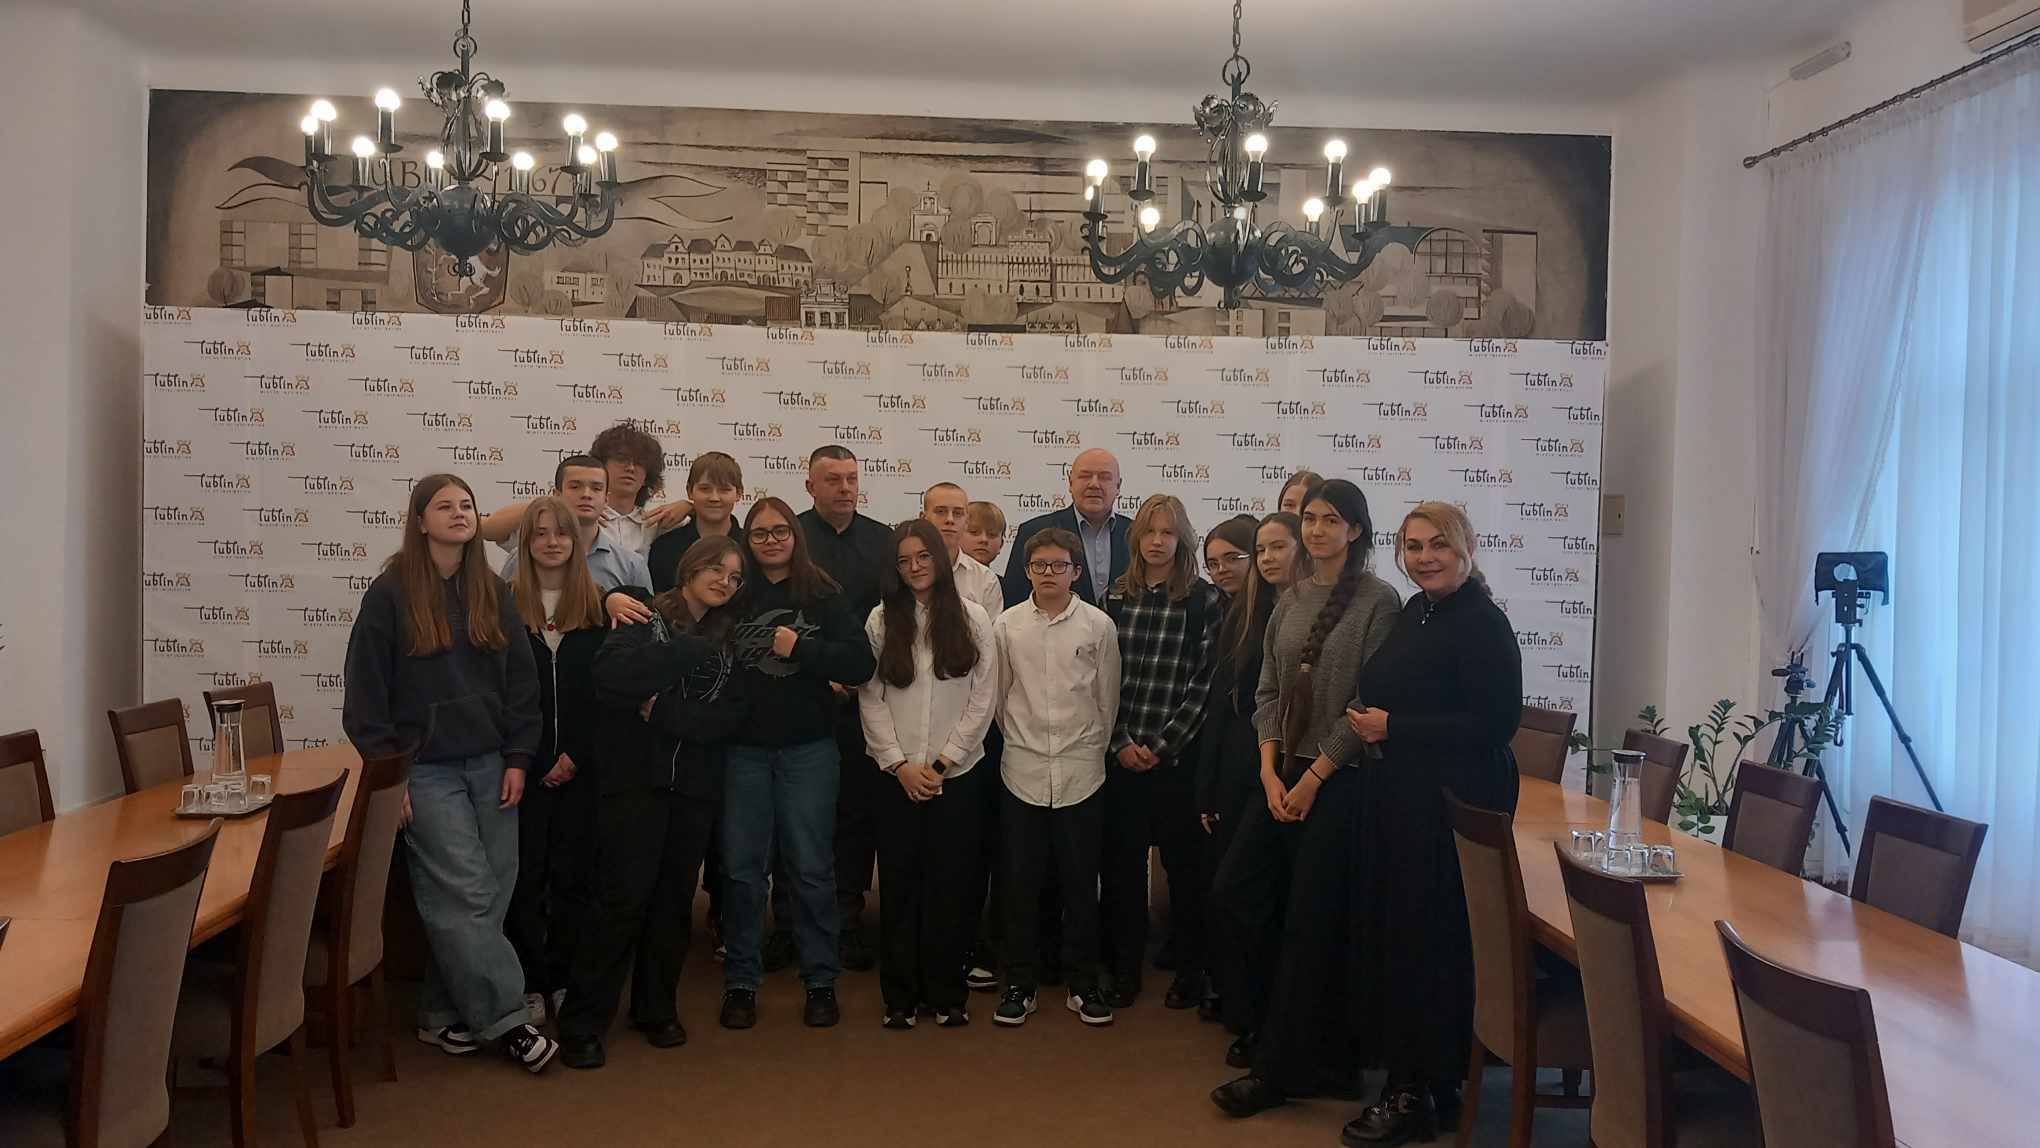 Uczniowie Szkoły Podstawowej nr 32 w Lublinie pozują do zdjęcia w sali obrad Lubelskiego Ratusza